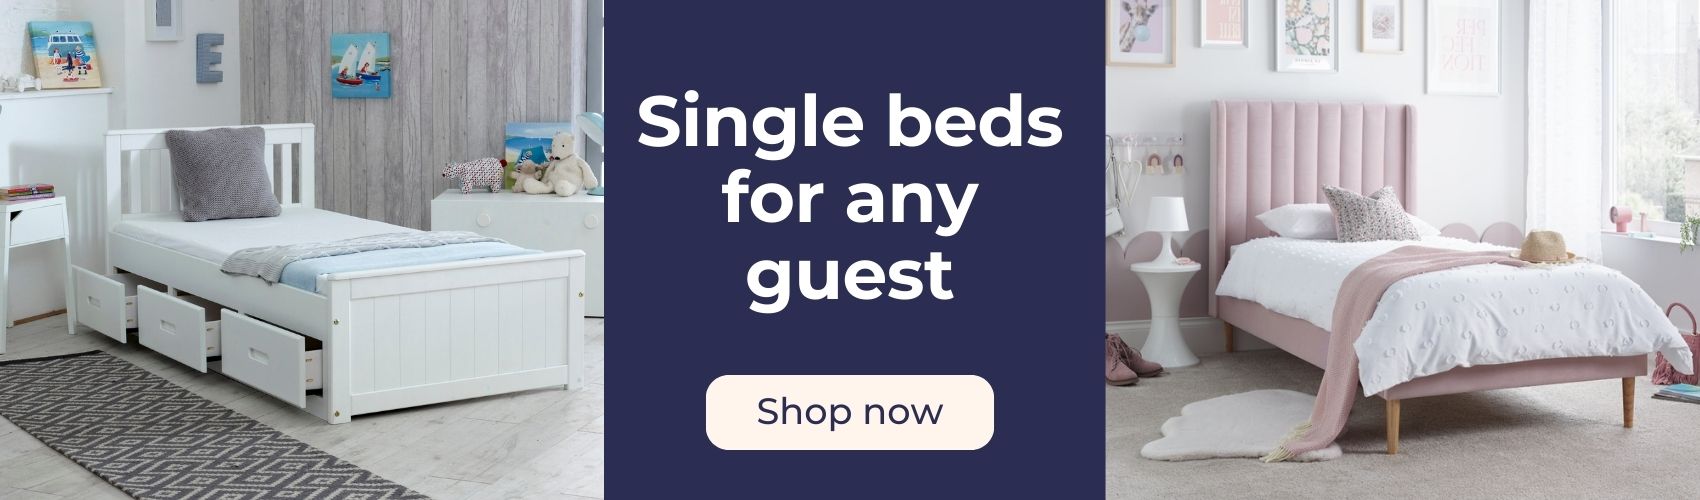 Shop single beds